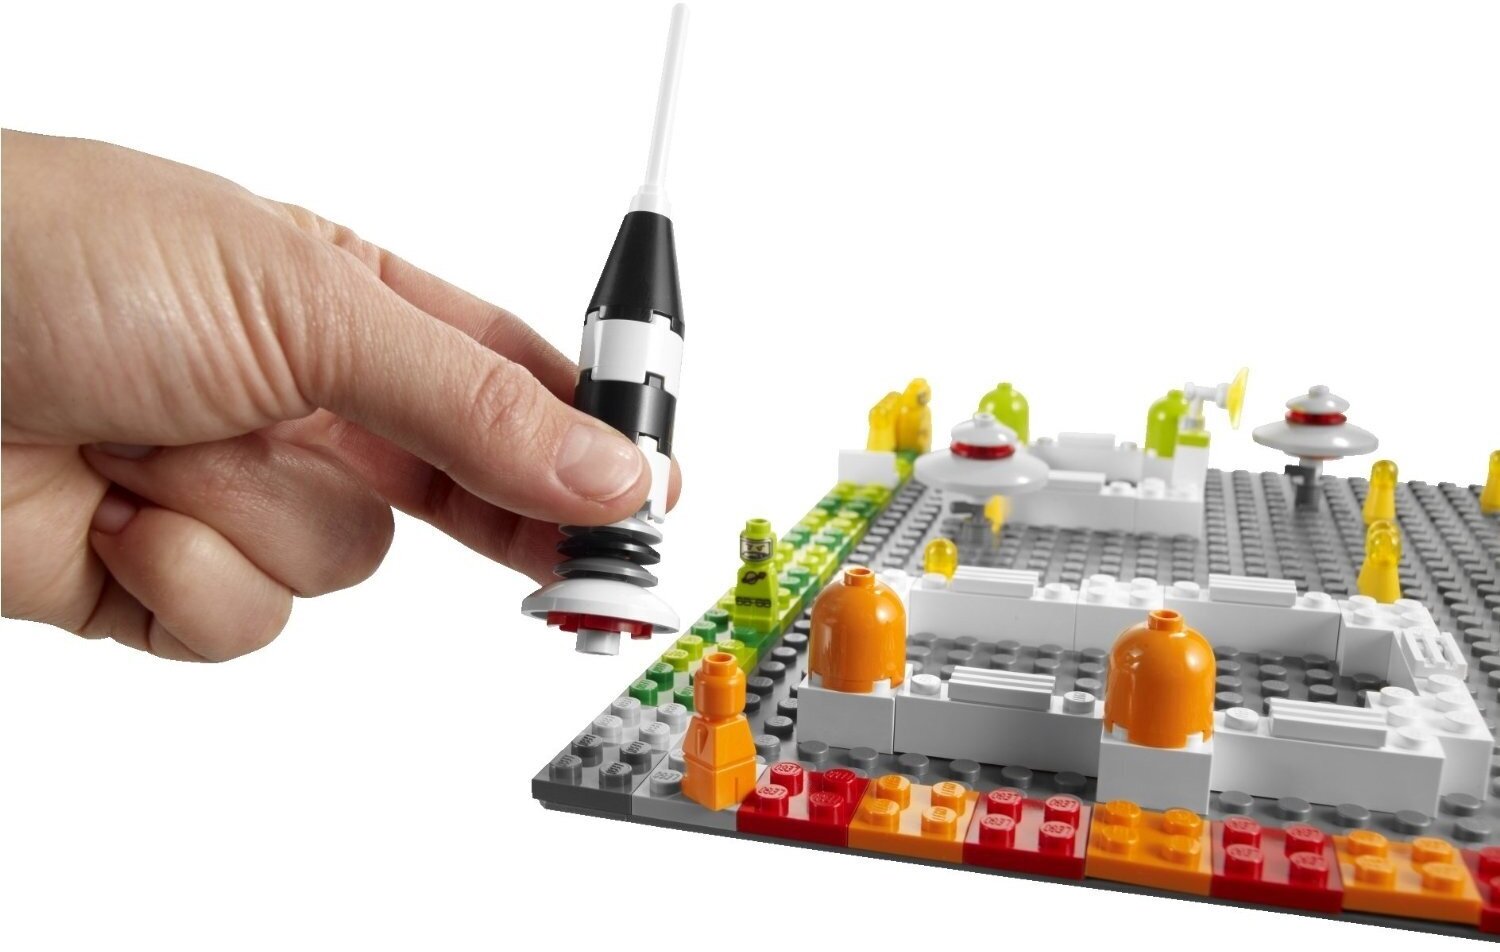 Конструктор LEGO Games 3842 Лунная база